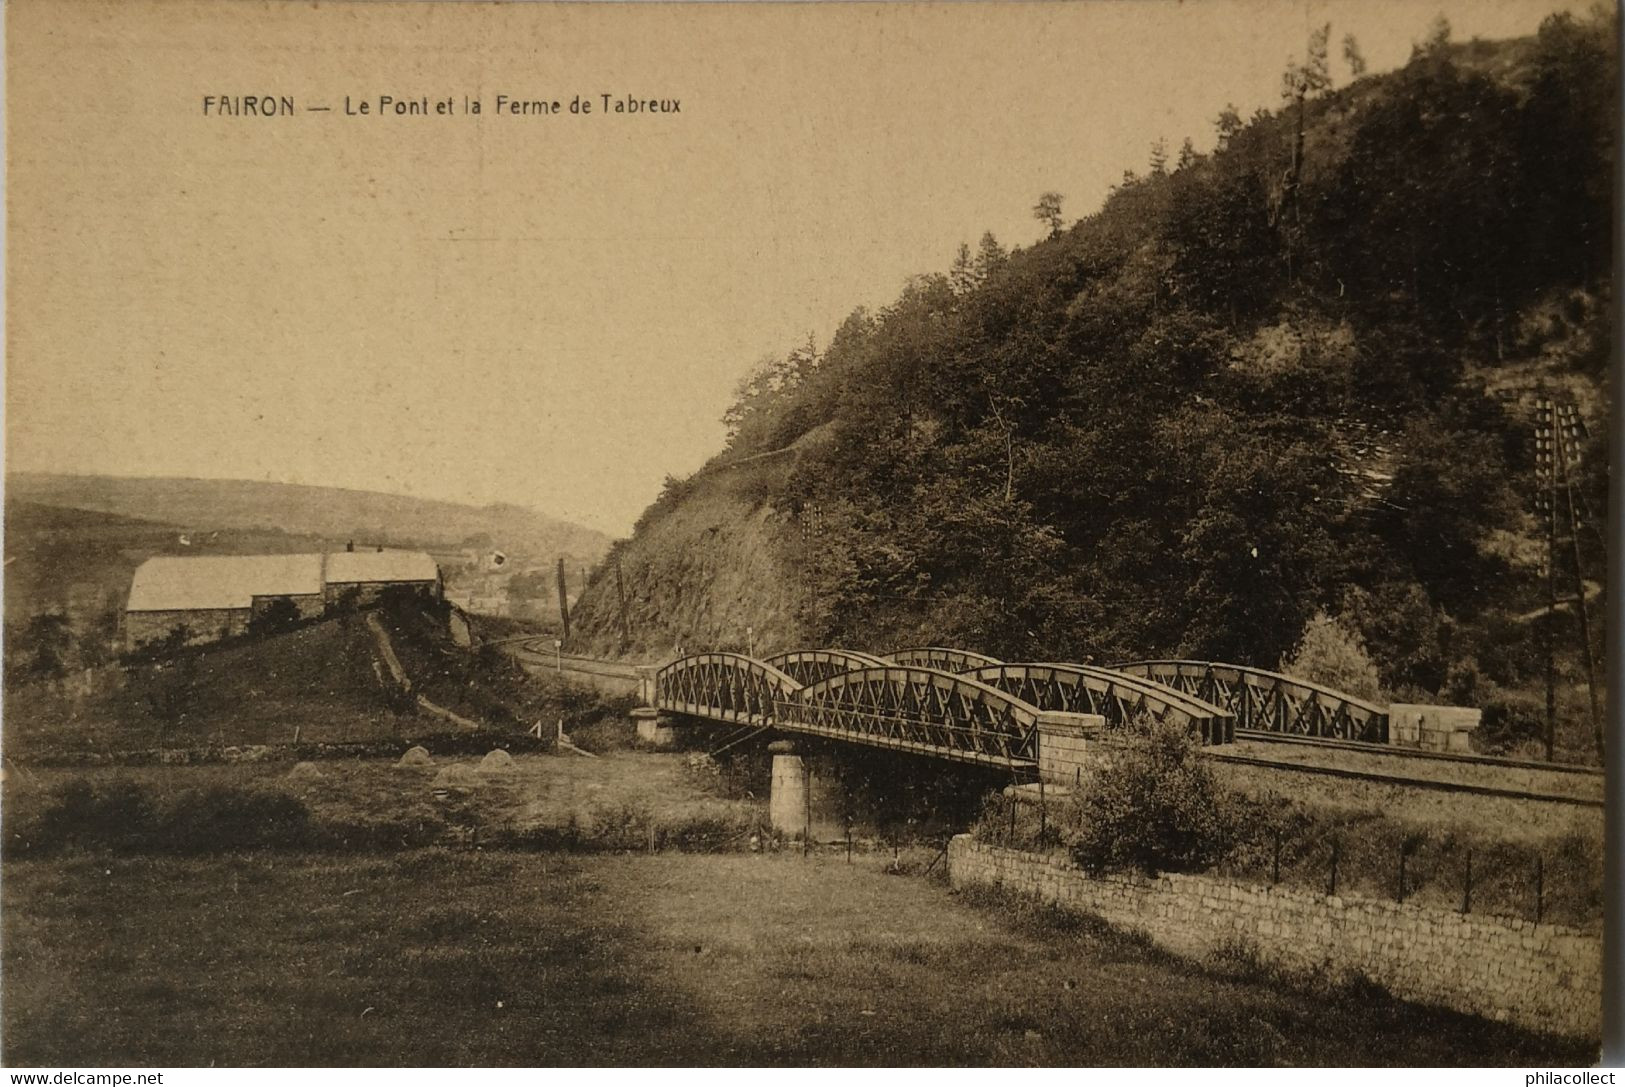 Fairon (Hamoir) Le Pont Et La Ferme De Tabreux  19?? Ed. Desaix - Hamoir